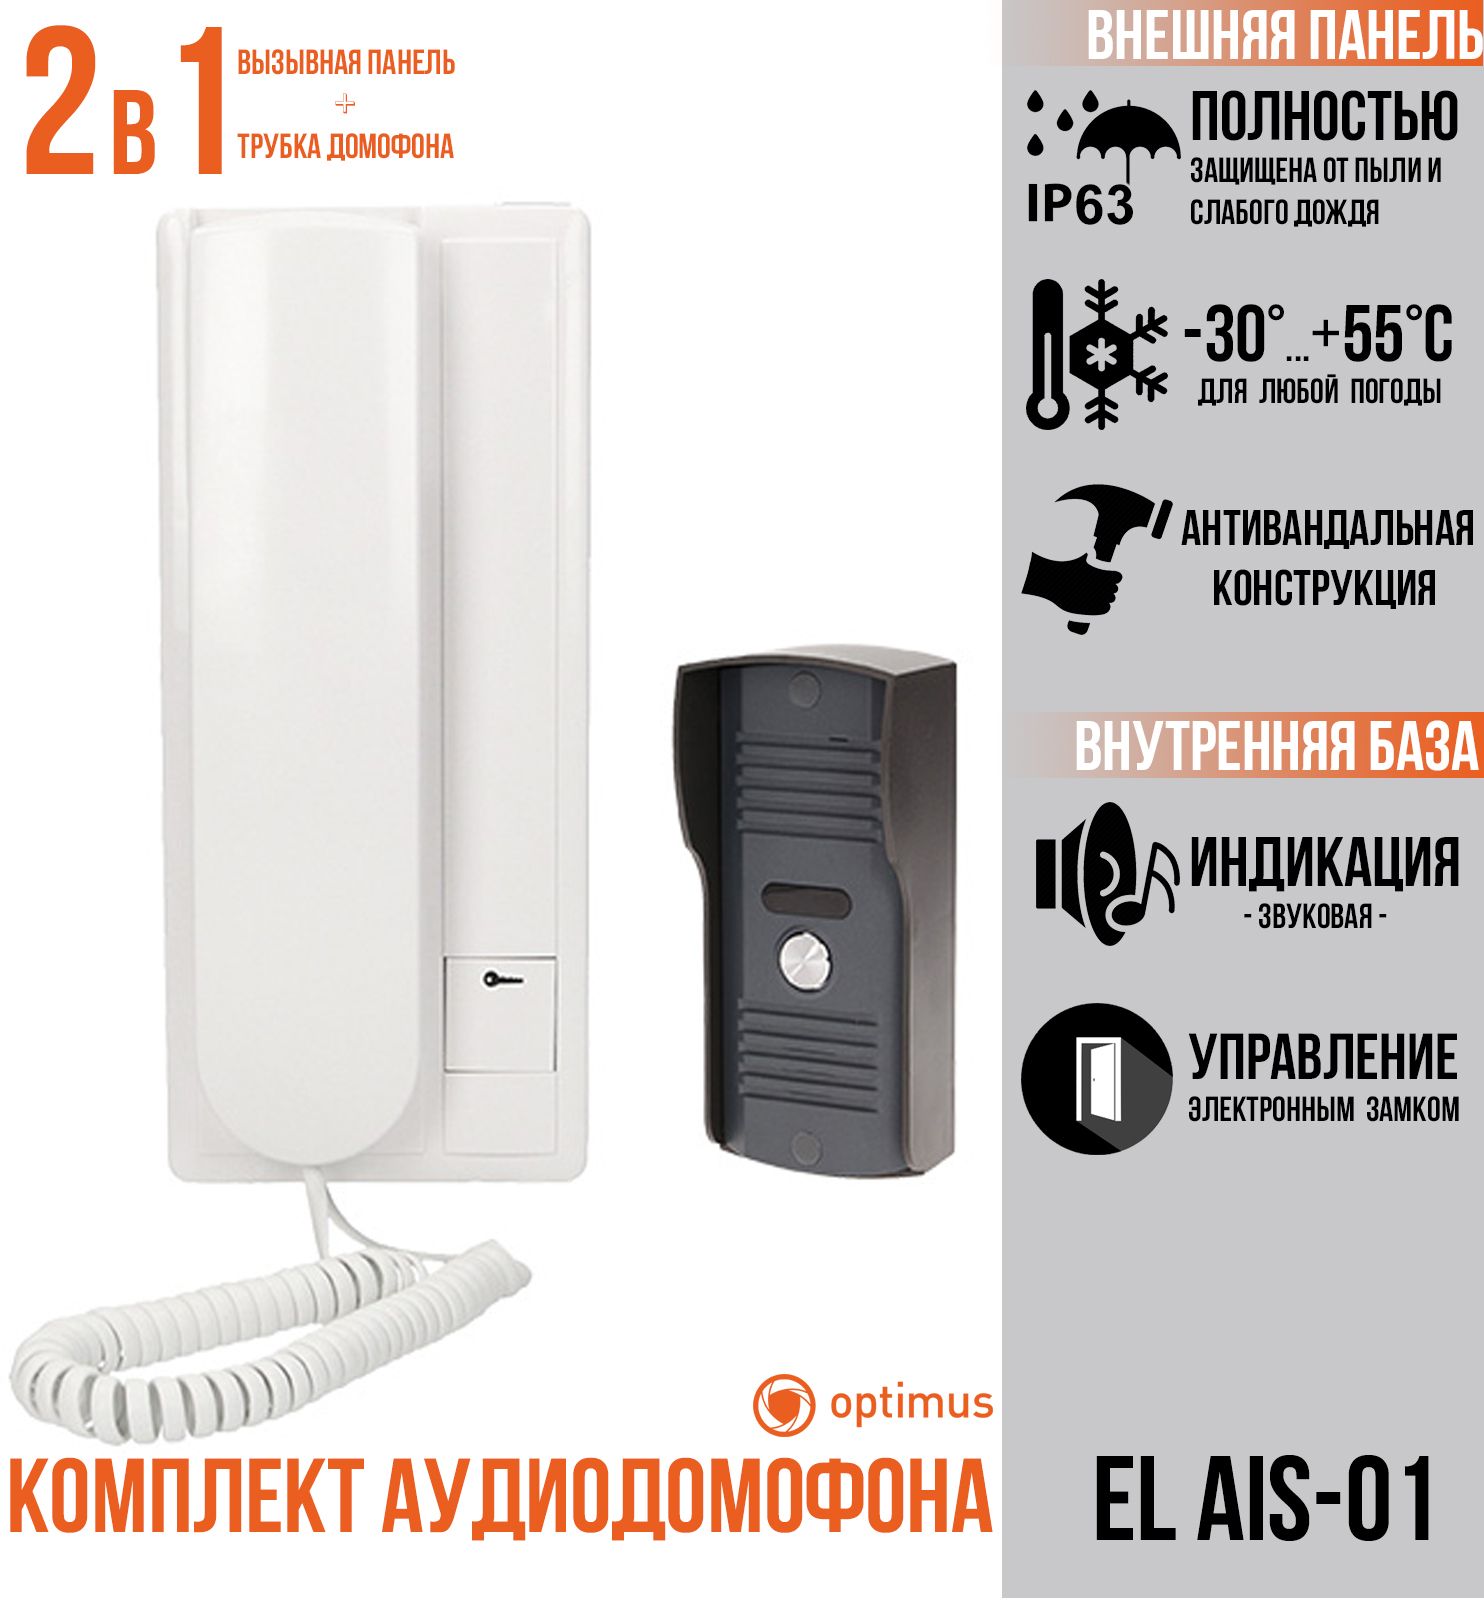 Комплект Optimus EL AIS-01 комплект аудиодомофона ts 203kit с электромеханическим замком ts el2369st